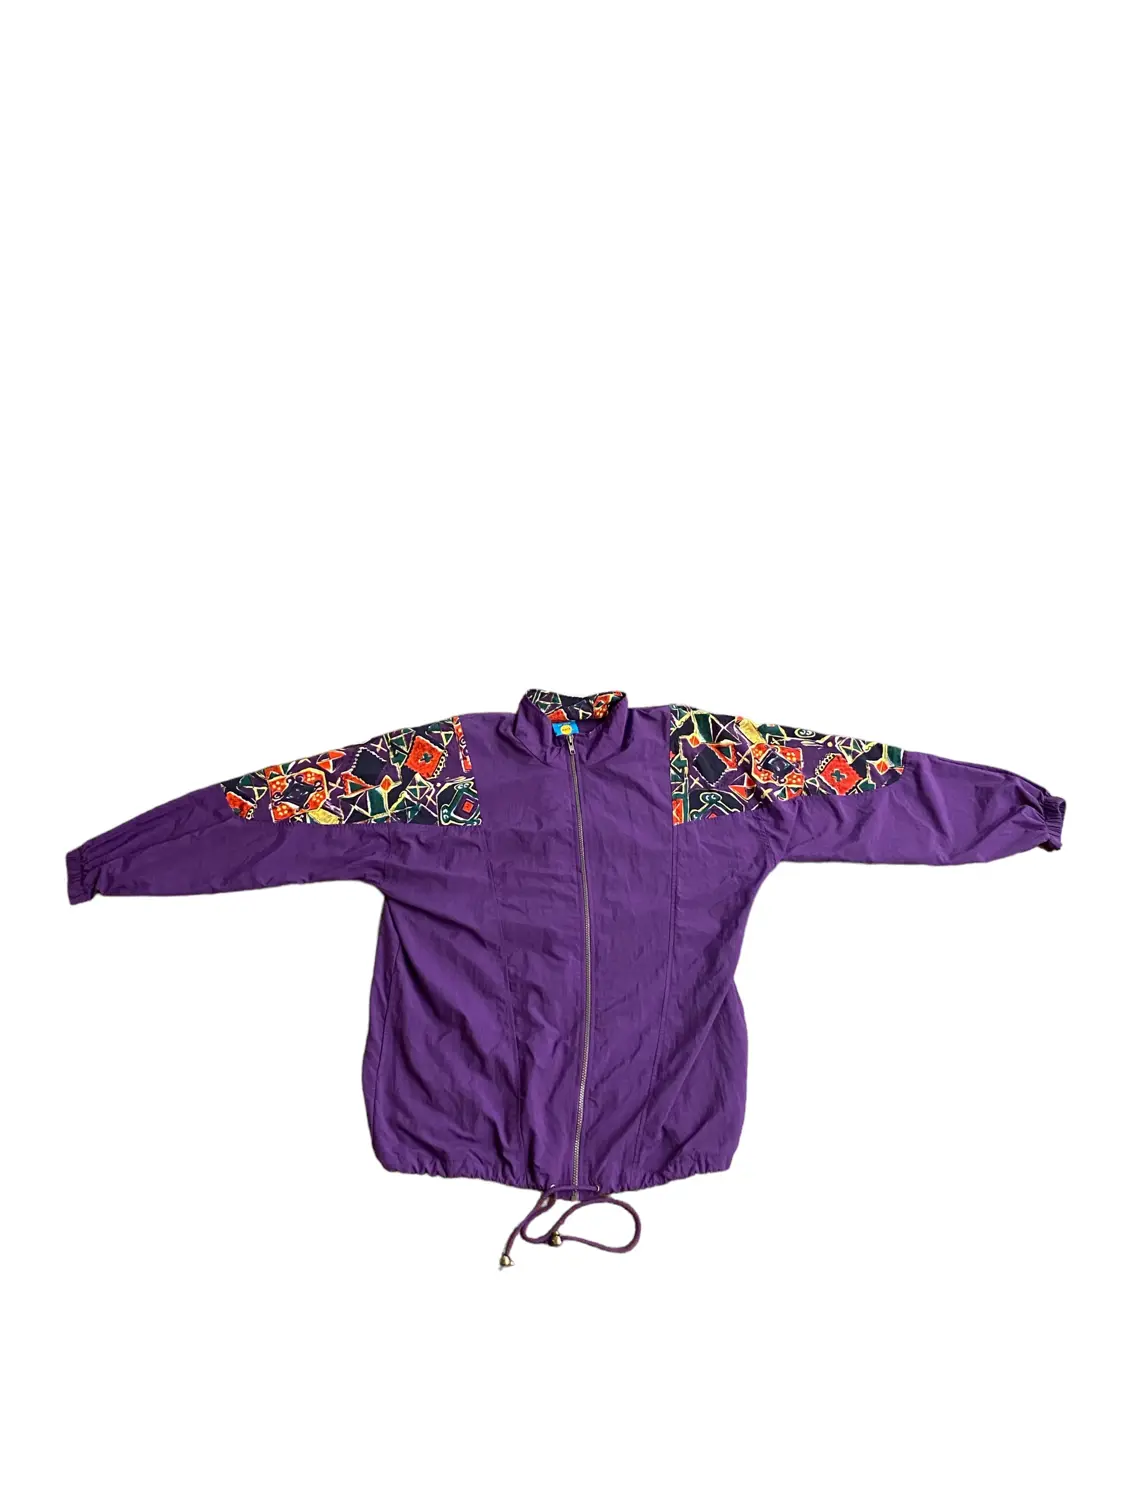 Purple Windbreaker Pullover